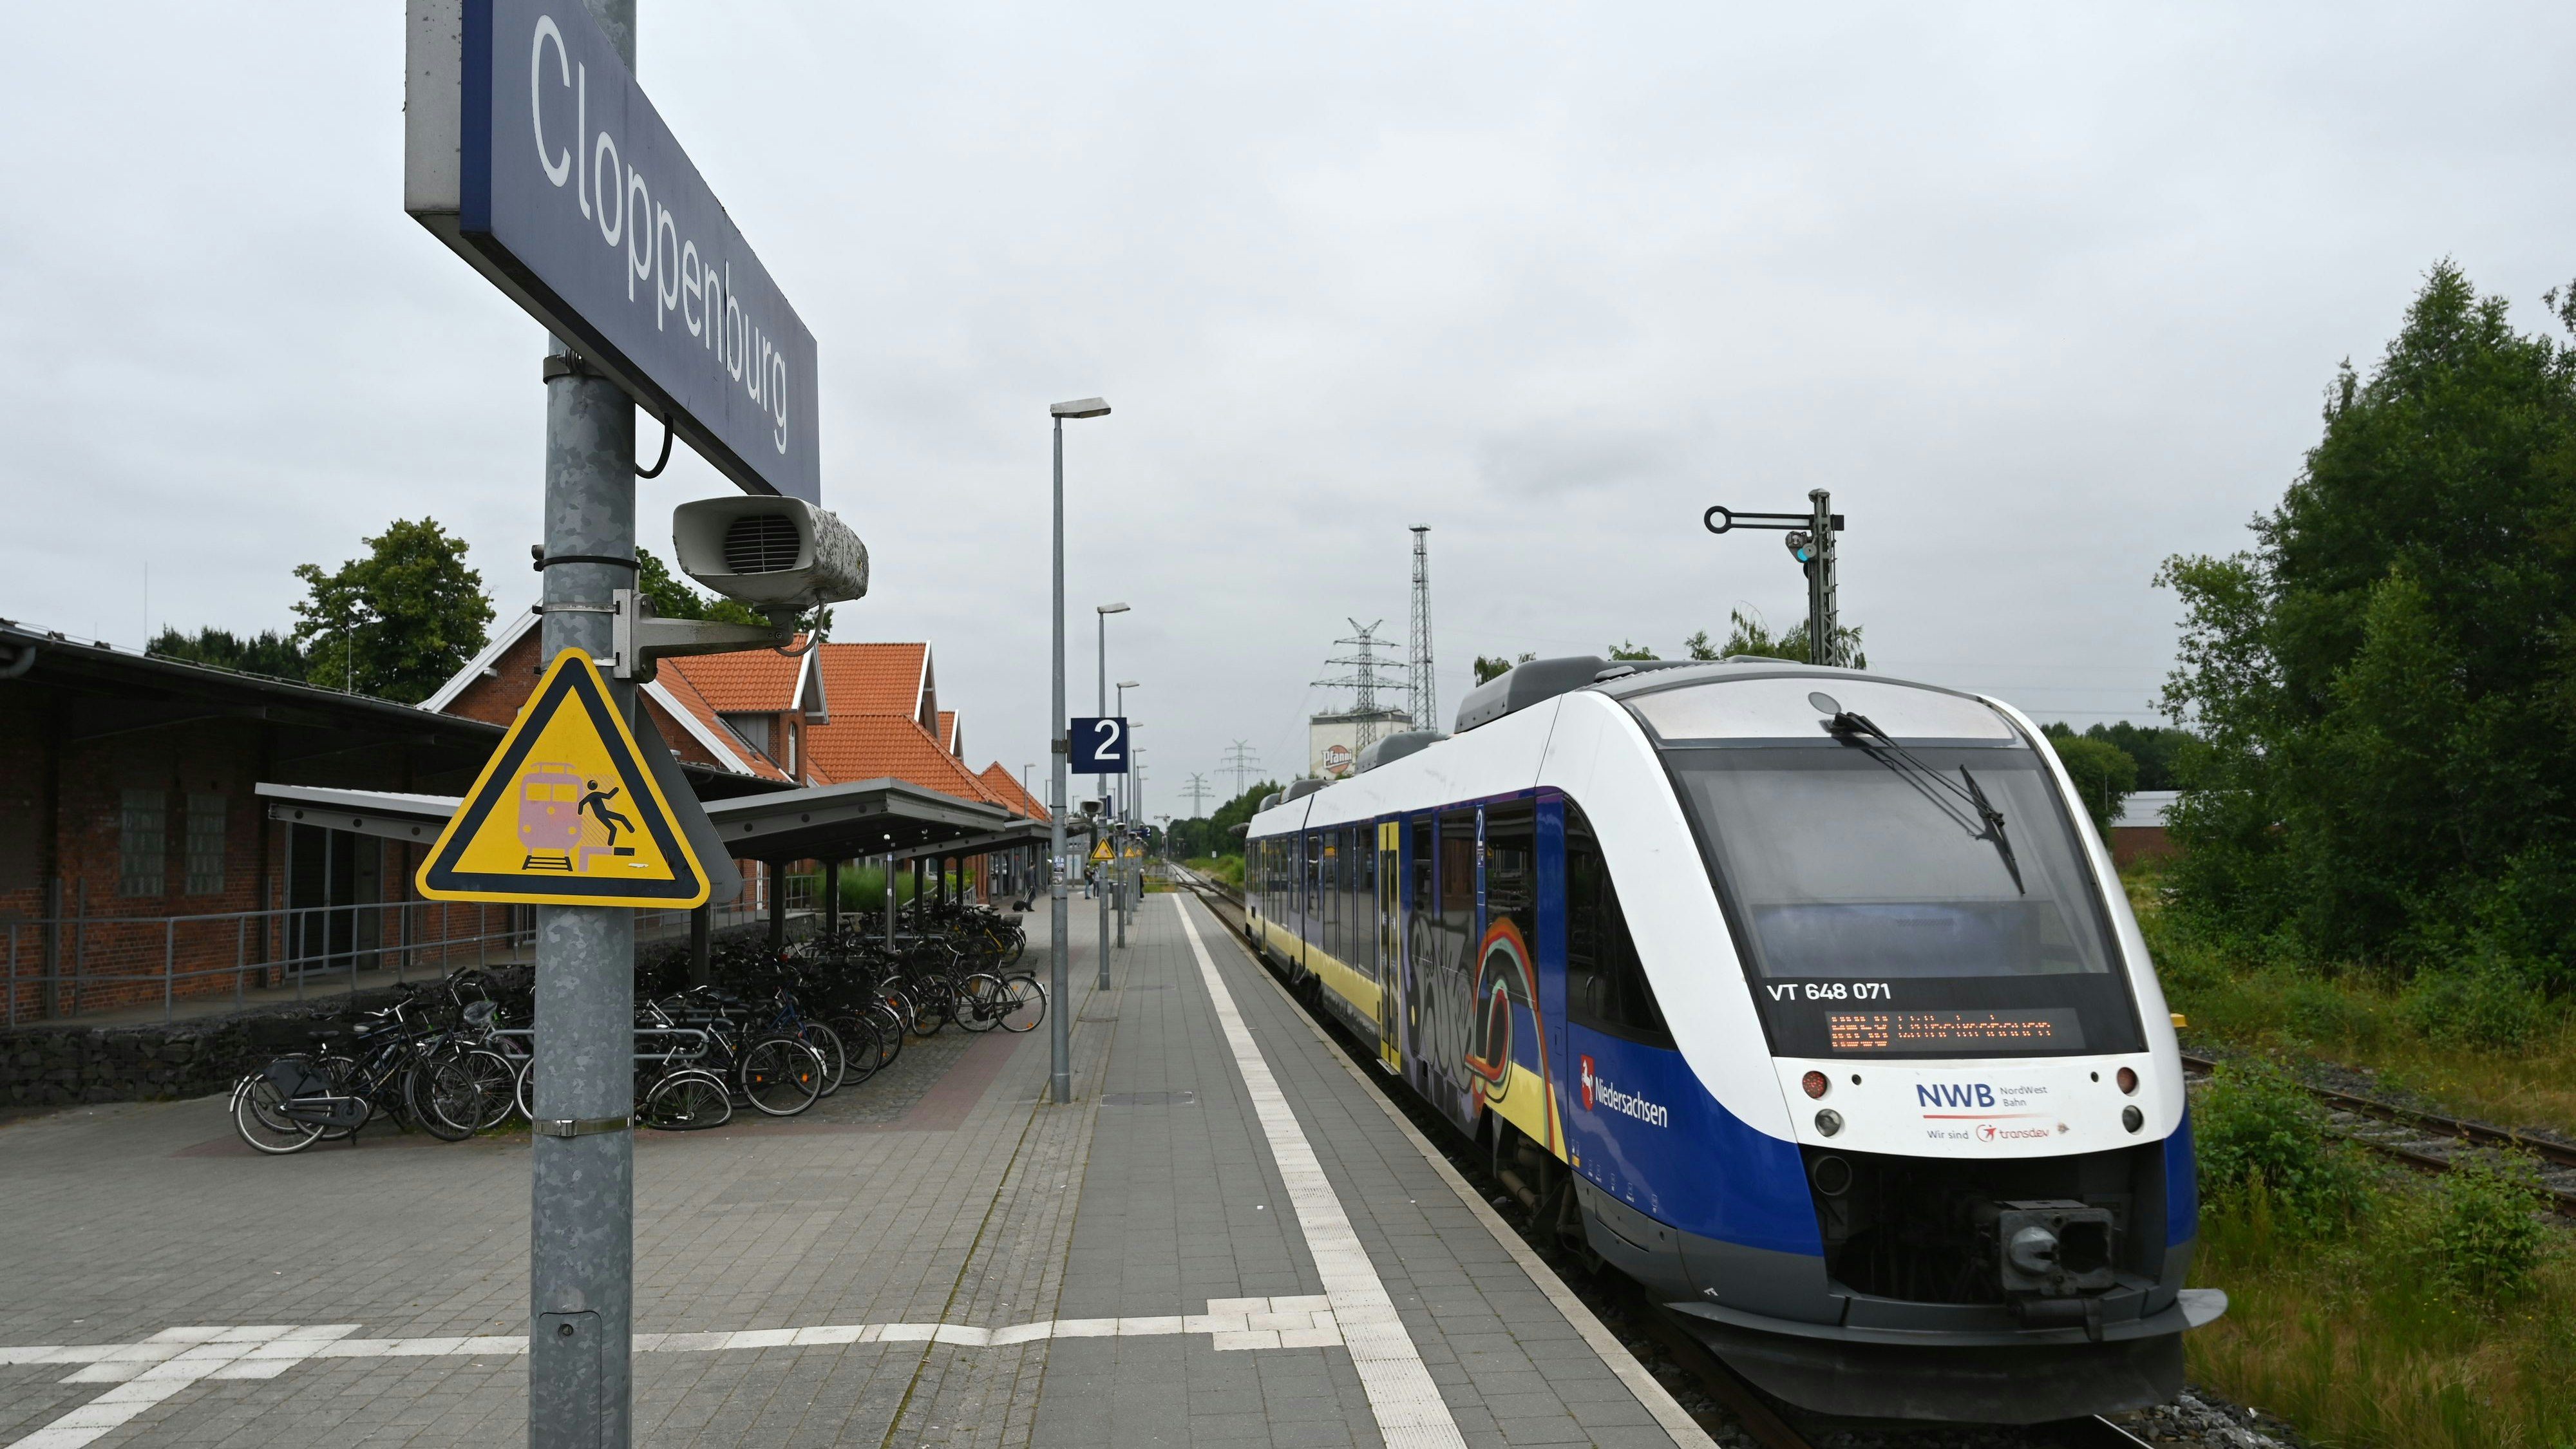 Zustieg: Die Fahrt der Ukrainerin startete in Cloppenburg, kurz danach wurde sie aus dem Zug geworfen. Foto: Hermes